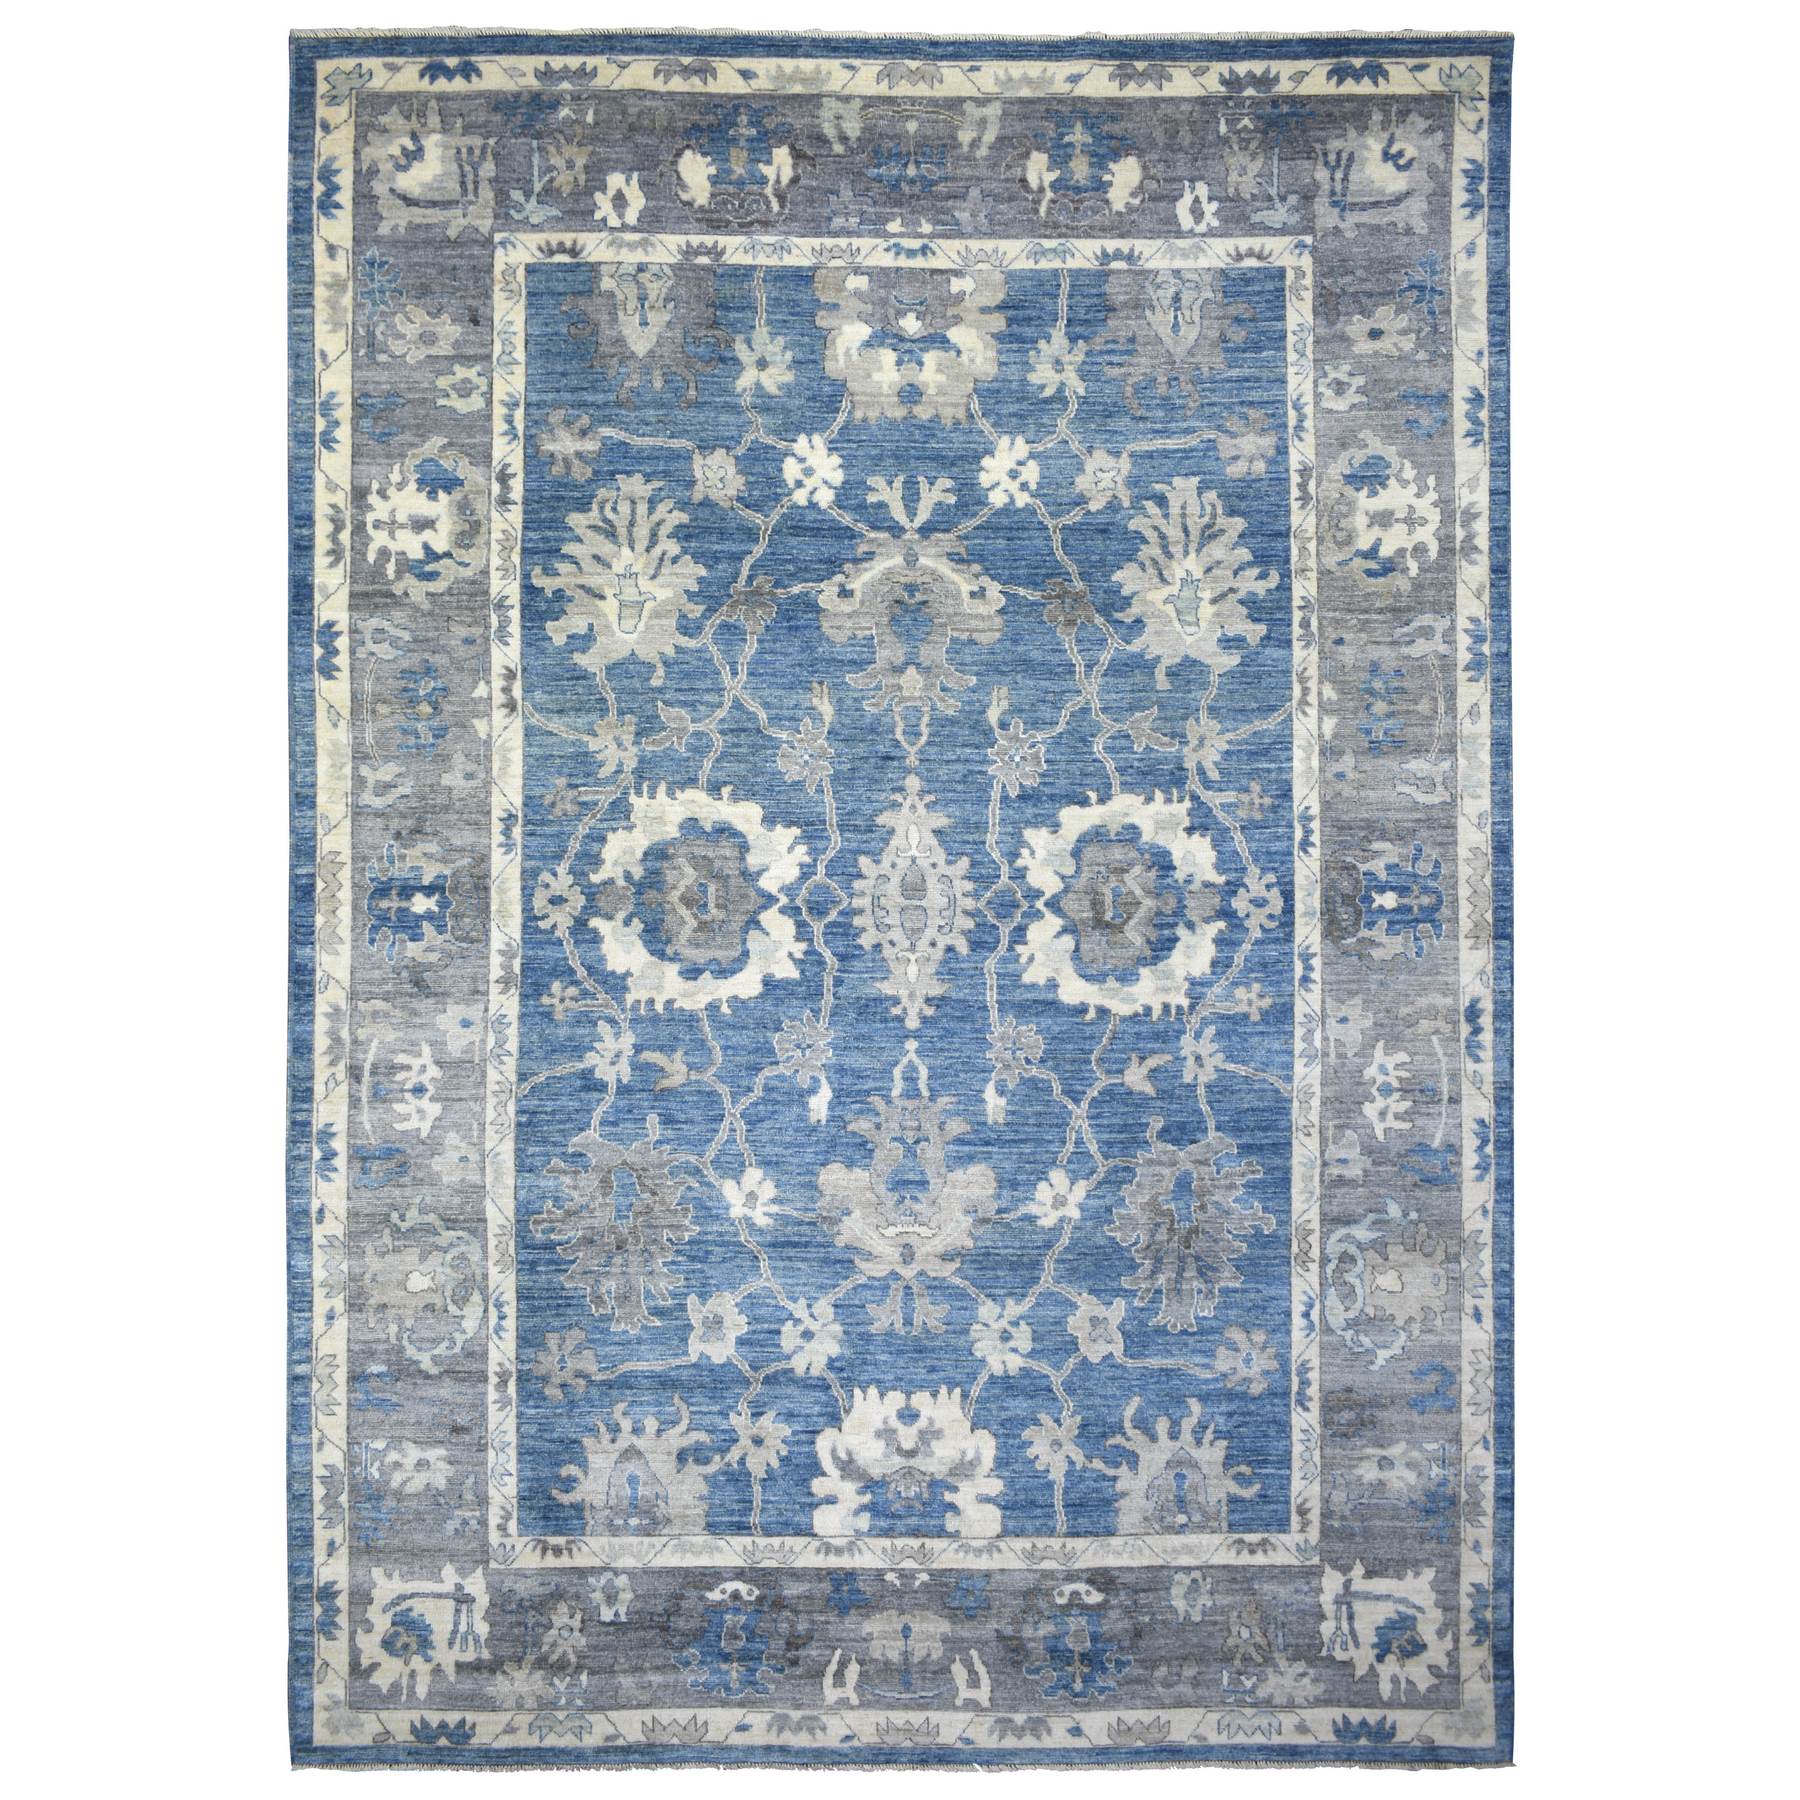 10'x14'1" Denim Blue Angora Oushak Bold Color Large Leaf Design Natural Dyes, Afghan Wool Hand Woven Oriental Rug 